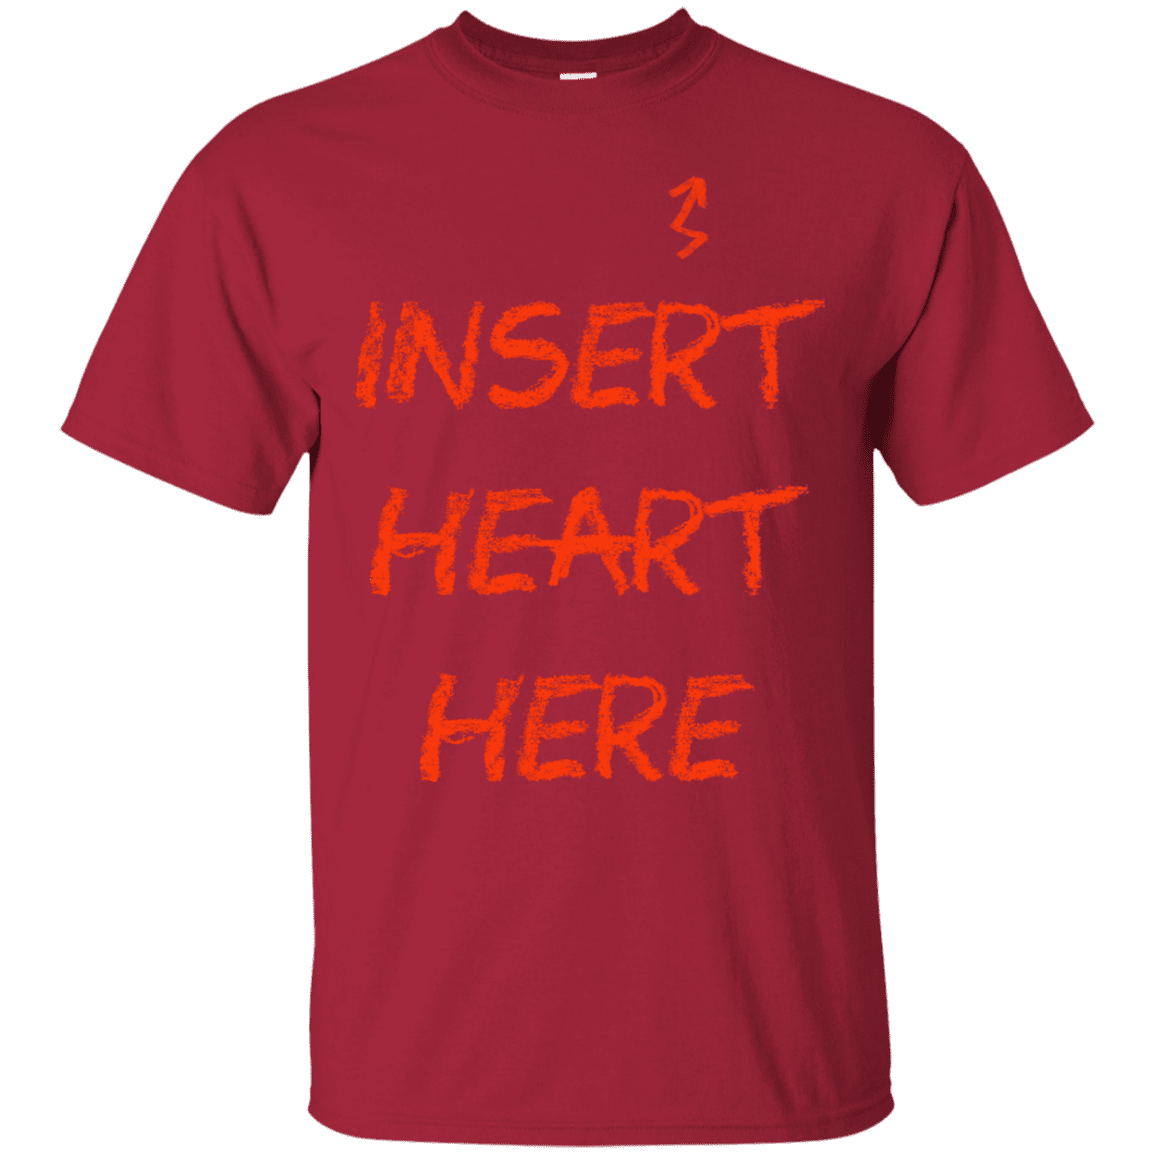 T-Shirts Cardinal / S Insert Heart Here T-Shirt